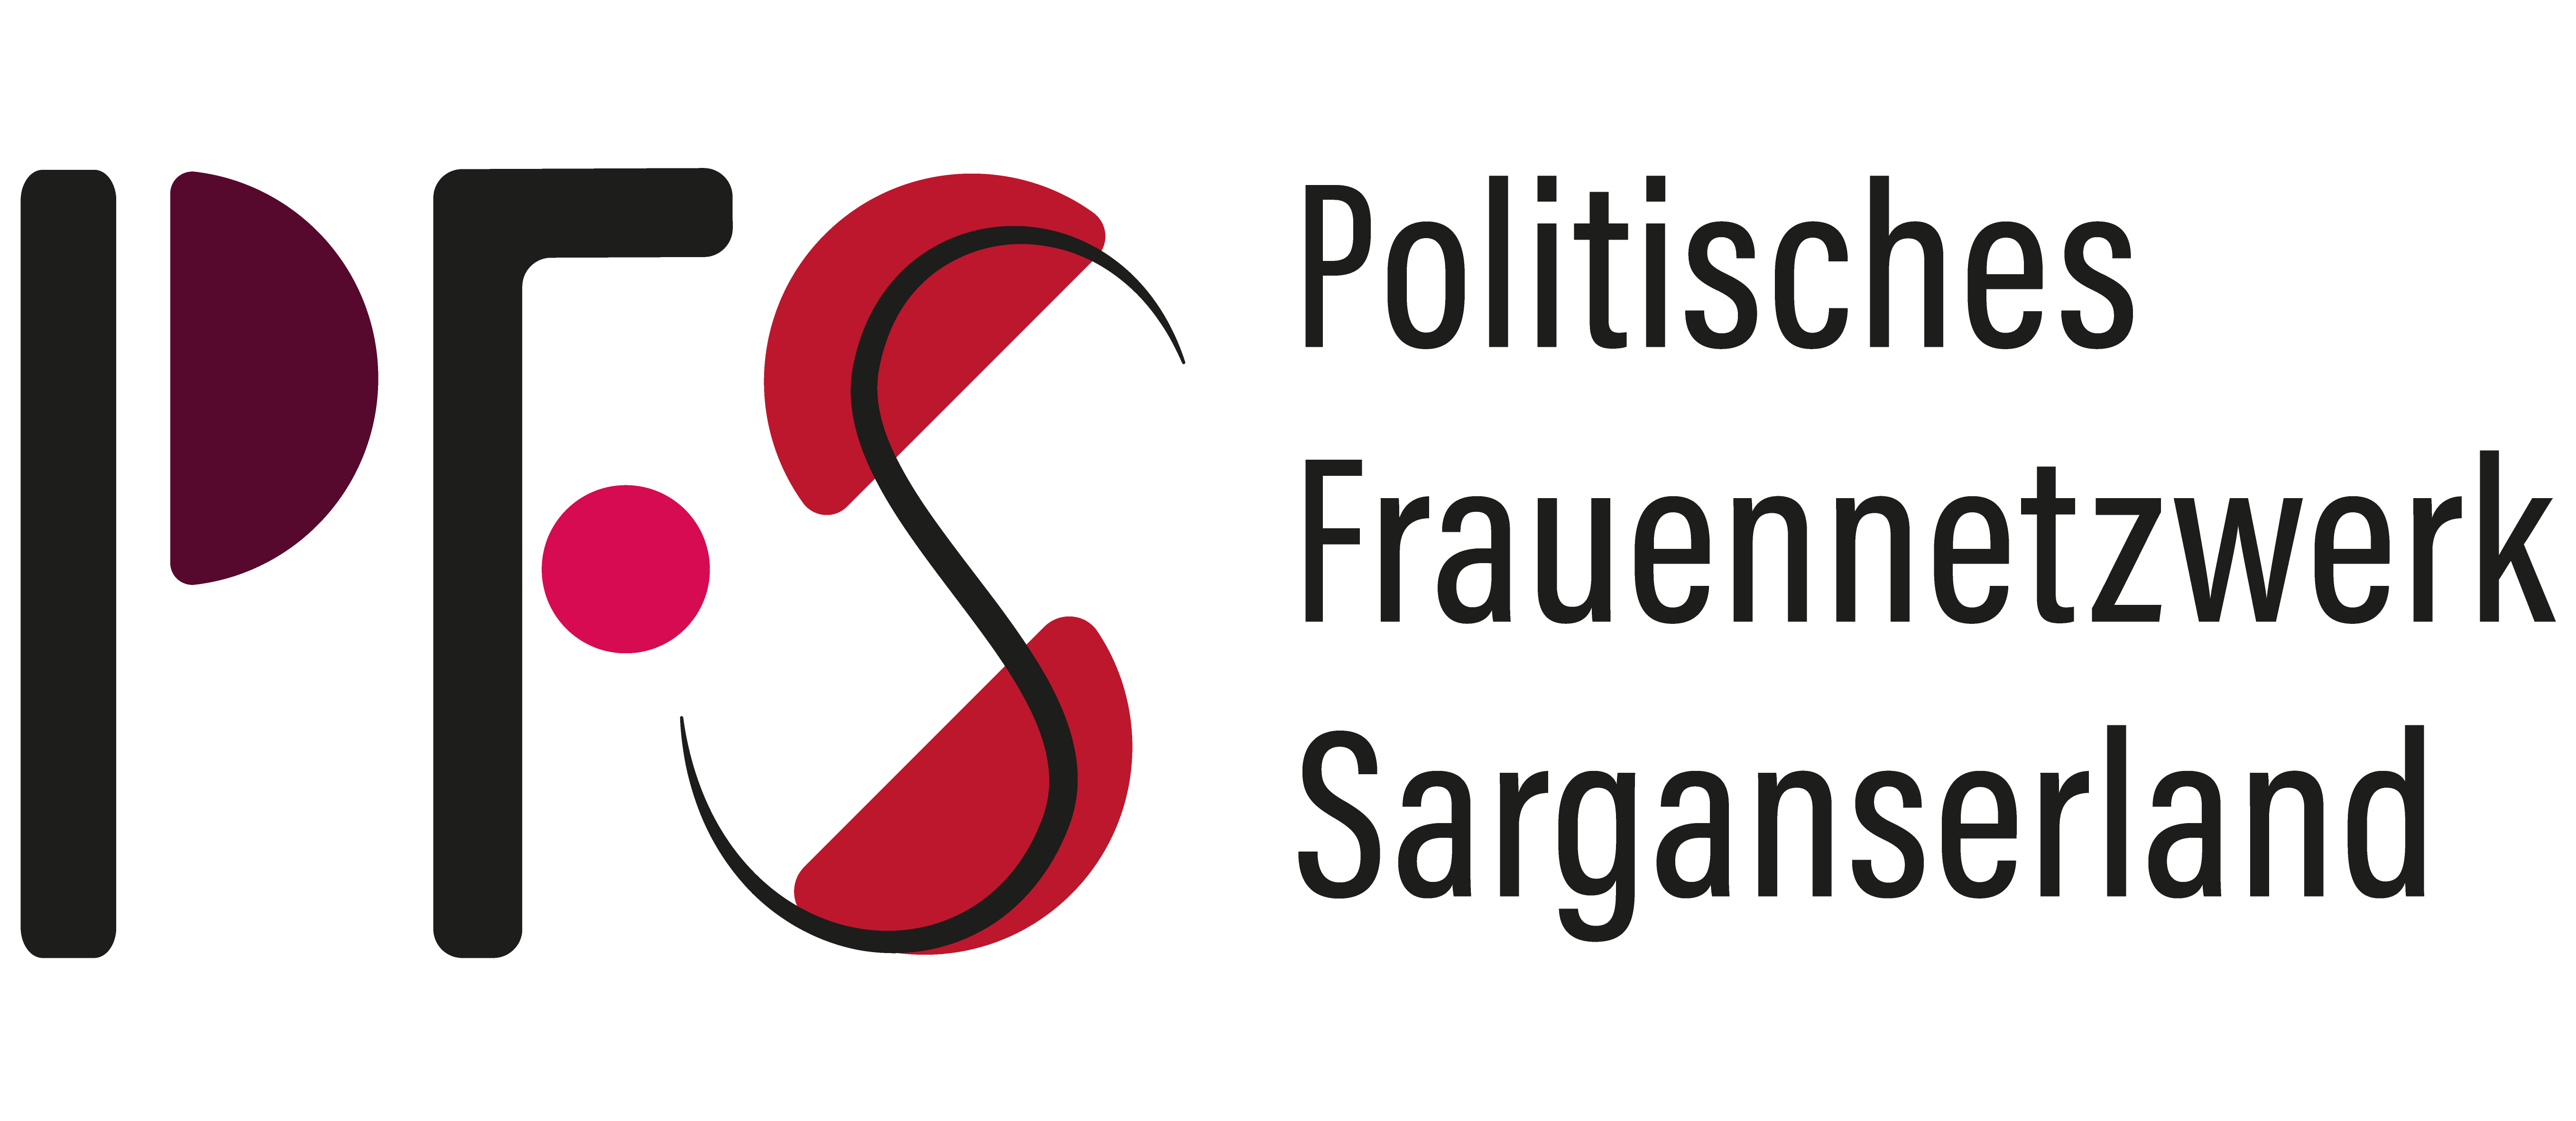 Politisches Frauennetzwerk Sarganserland